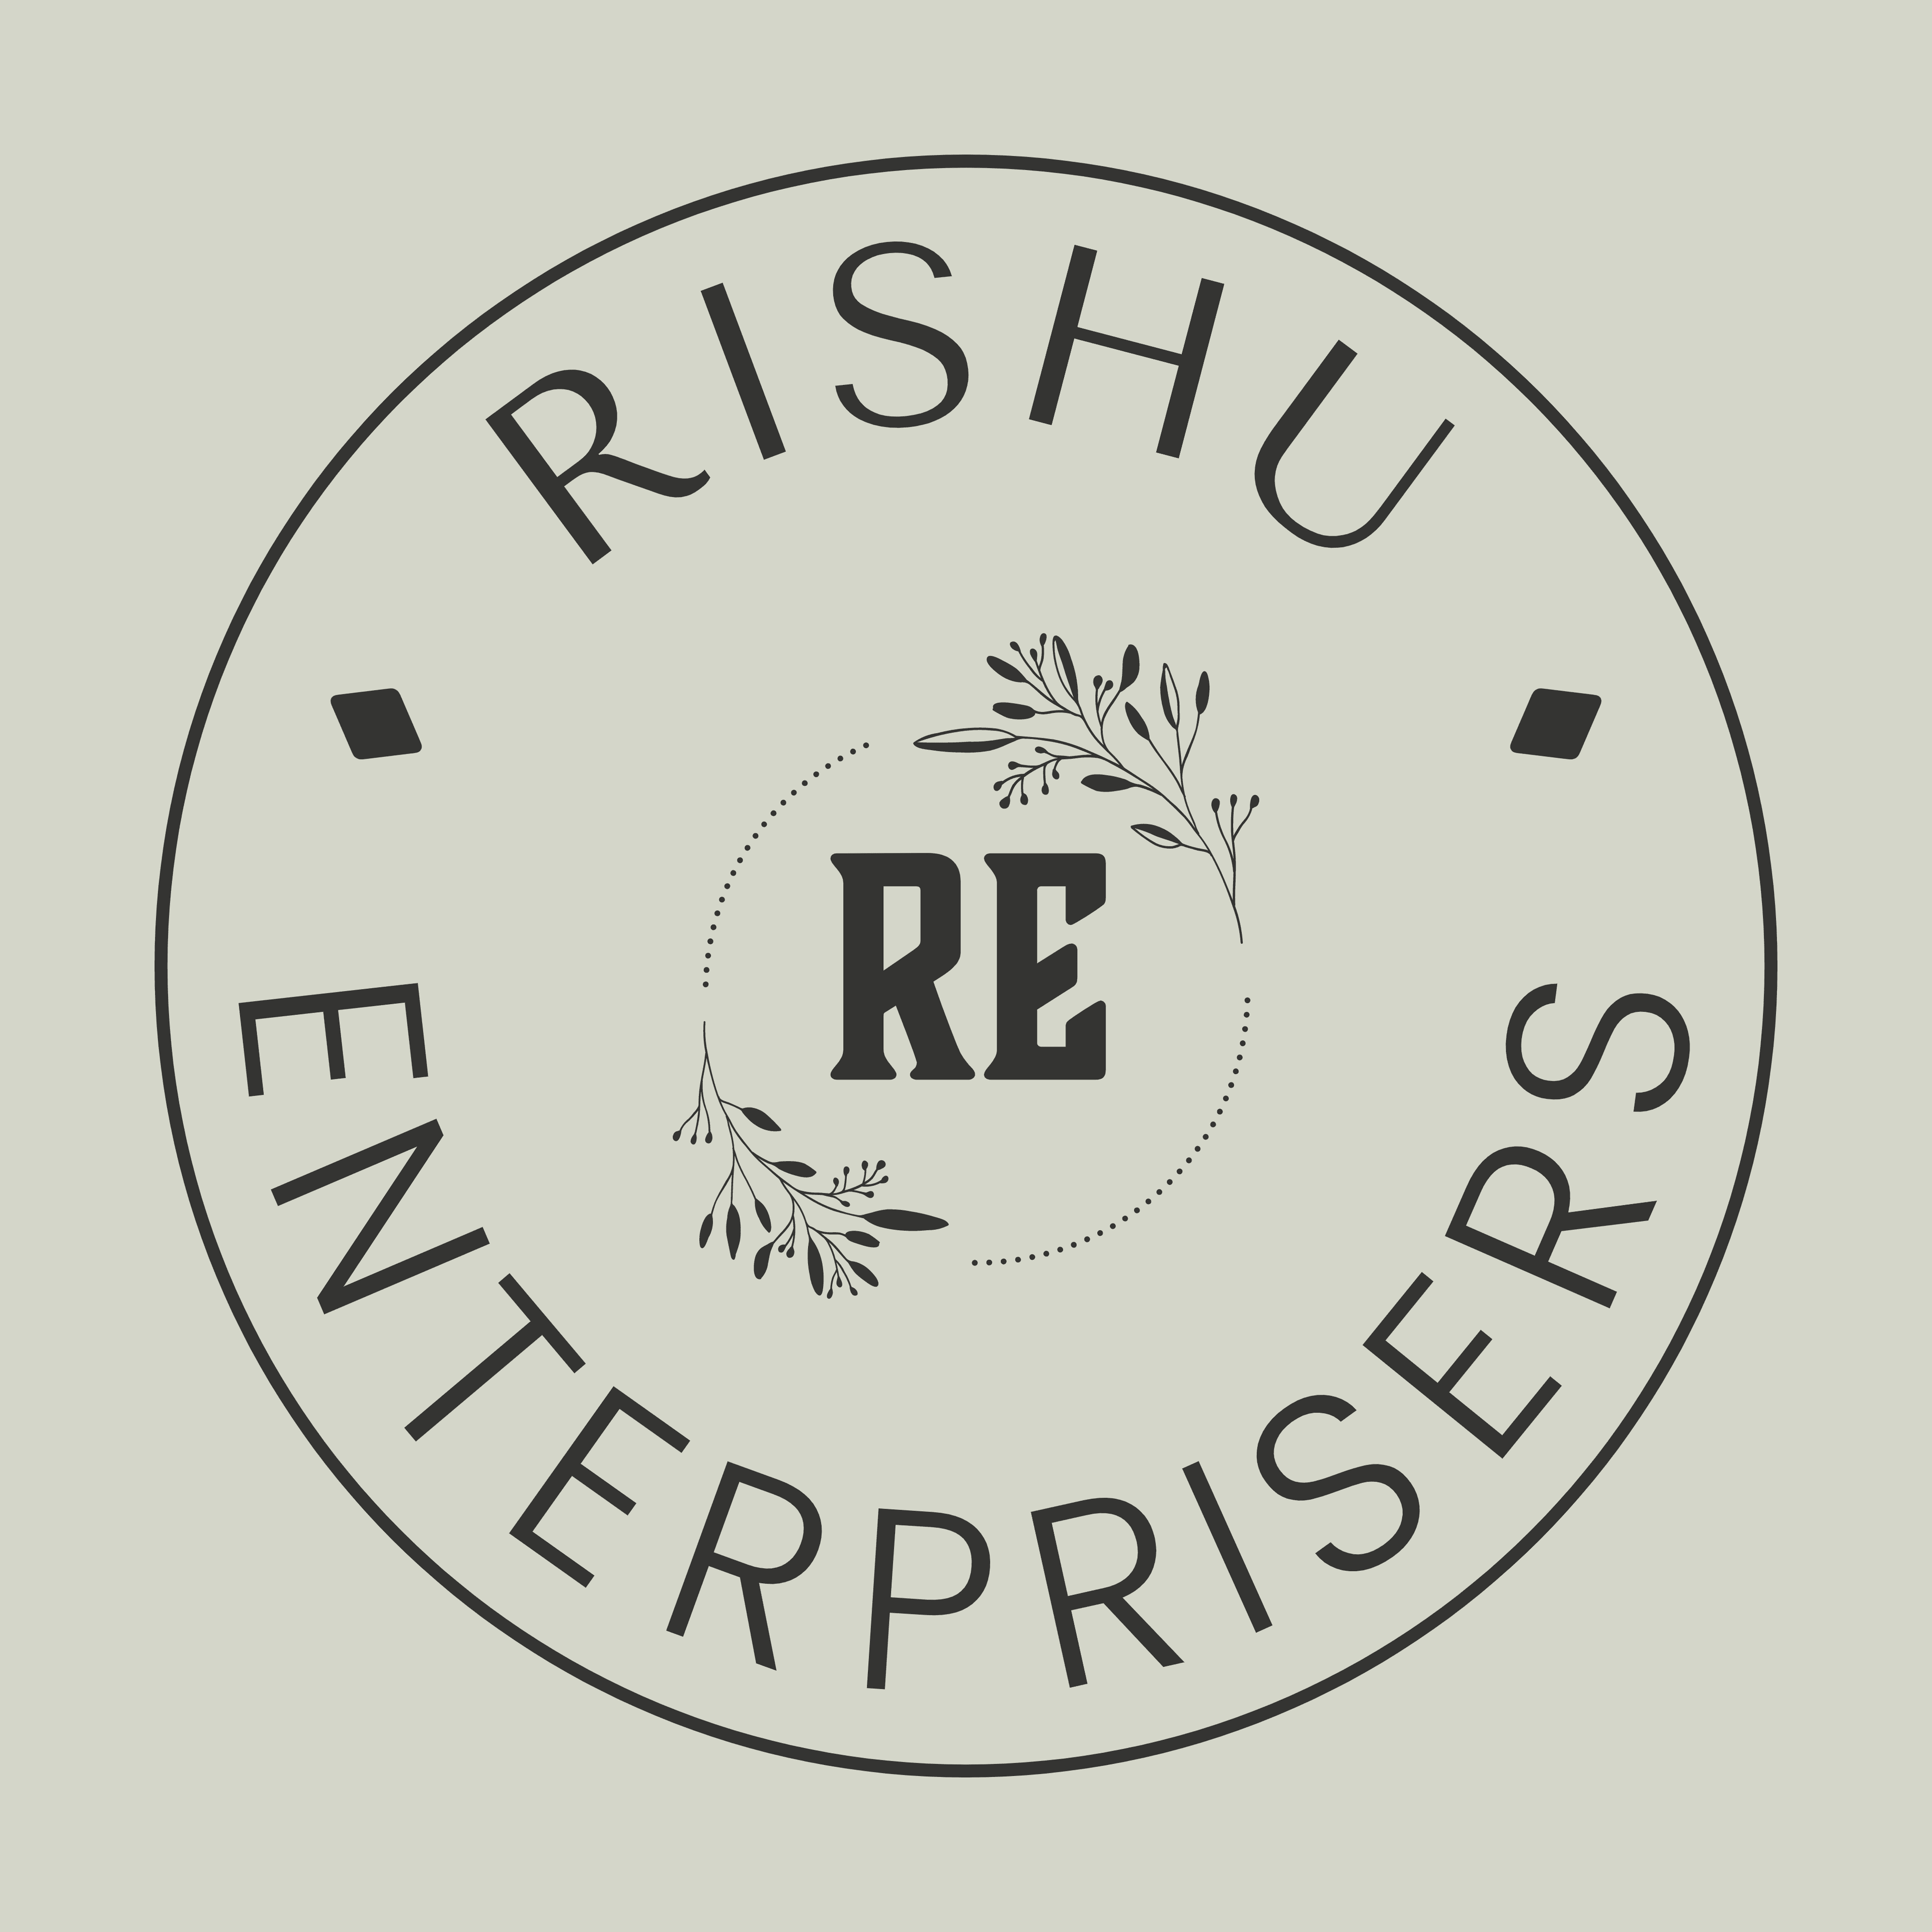 M/S Rishu Enterprises